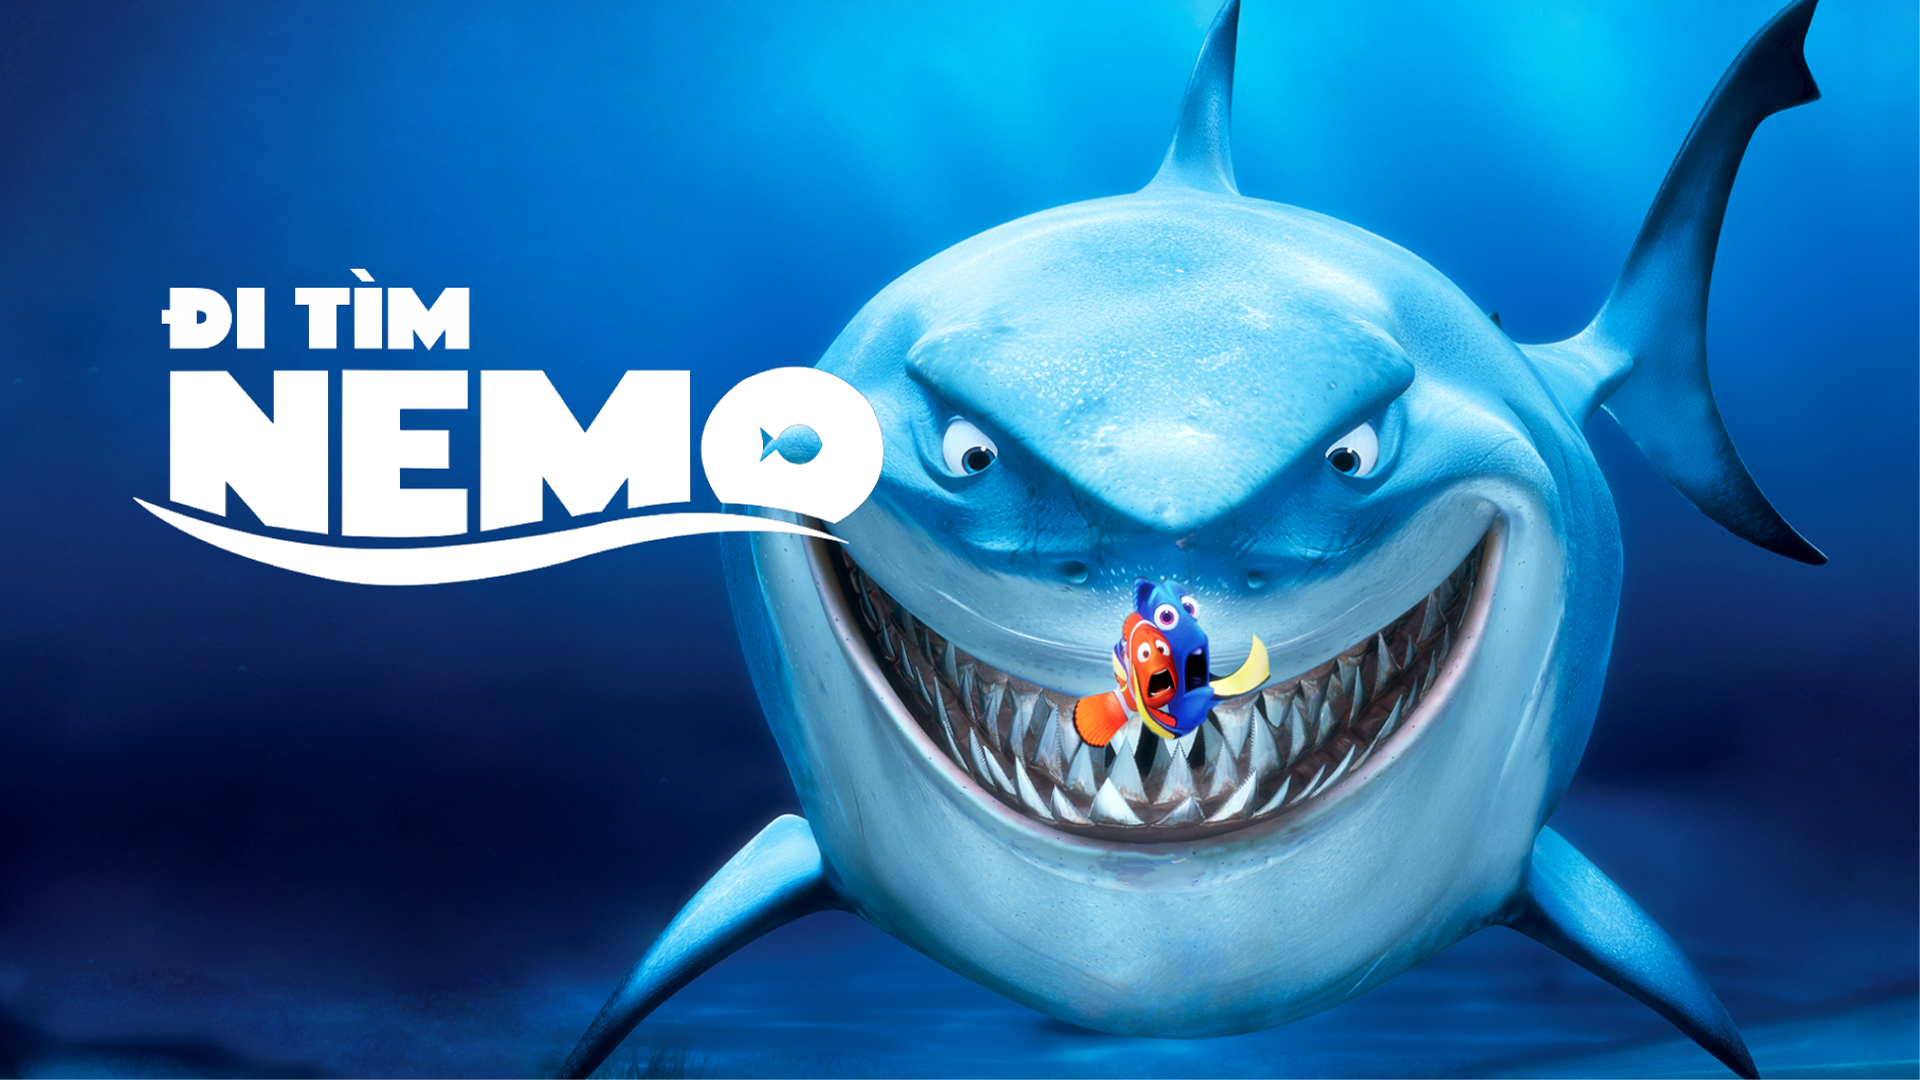 Đi tìm Nemo - Phim hoạt hình Disney thú vị